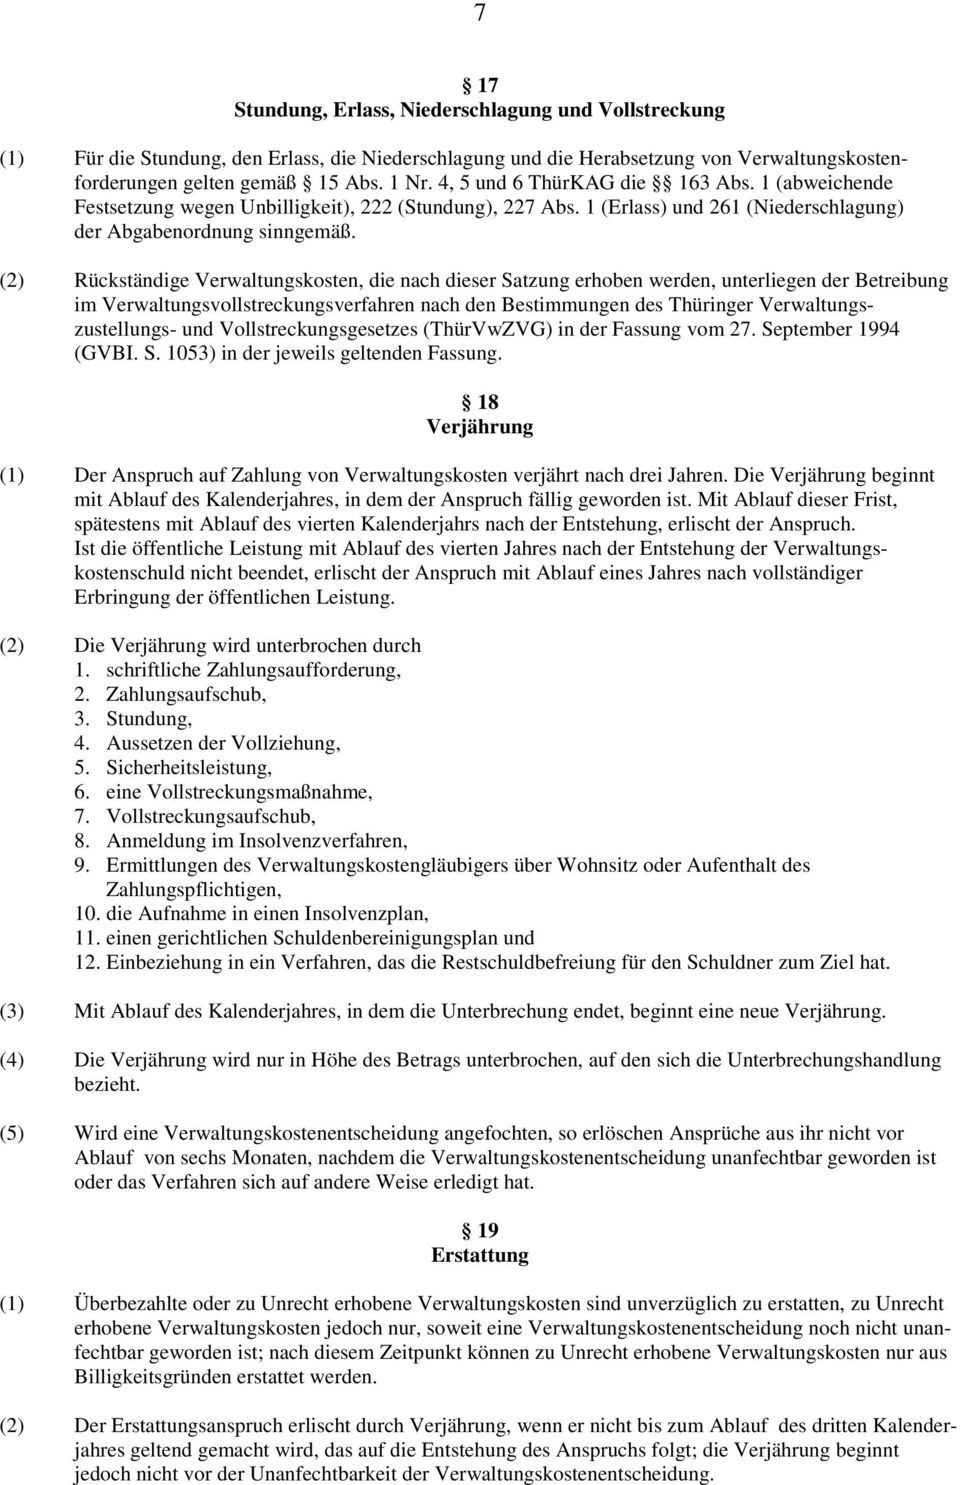 (2) Rückständige Verwaltungskosten, die nach dieser Satzung erhoben werden, unterliegen der Betreibung im Verwaltungsvollstreckungsverfahren nach den Bestimmungen des Thüringer